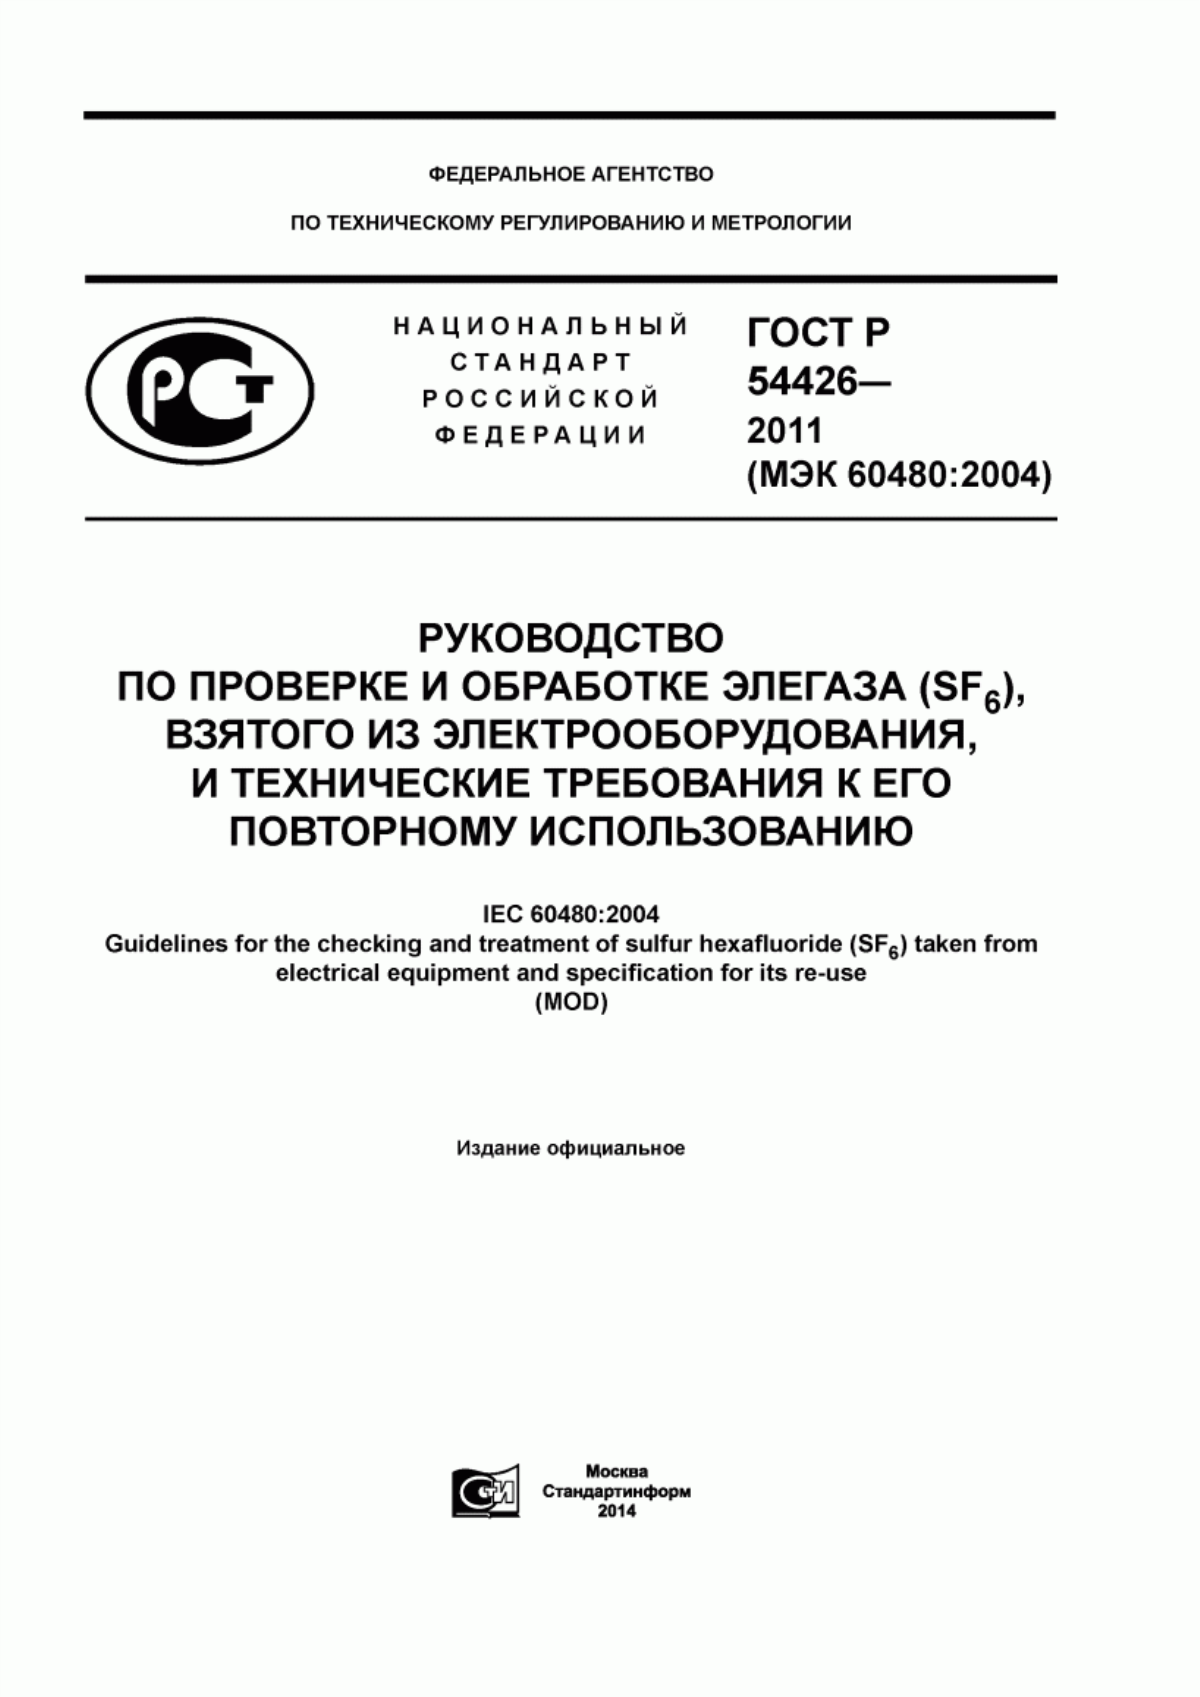 ГОСТ Р 54426-2011 Руководство по проверке и обработке элегаза (SF6), взятого из электрооборудования, и технические требования к его повторному использованию